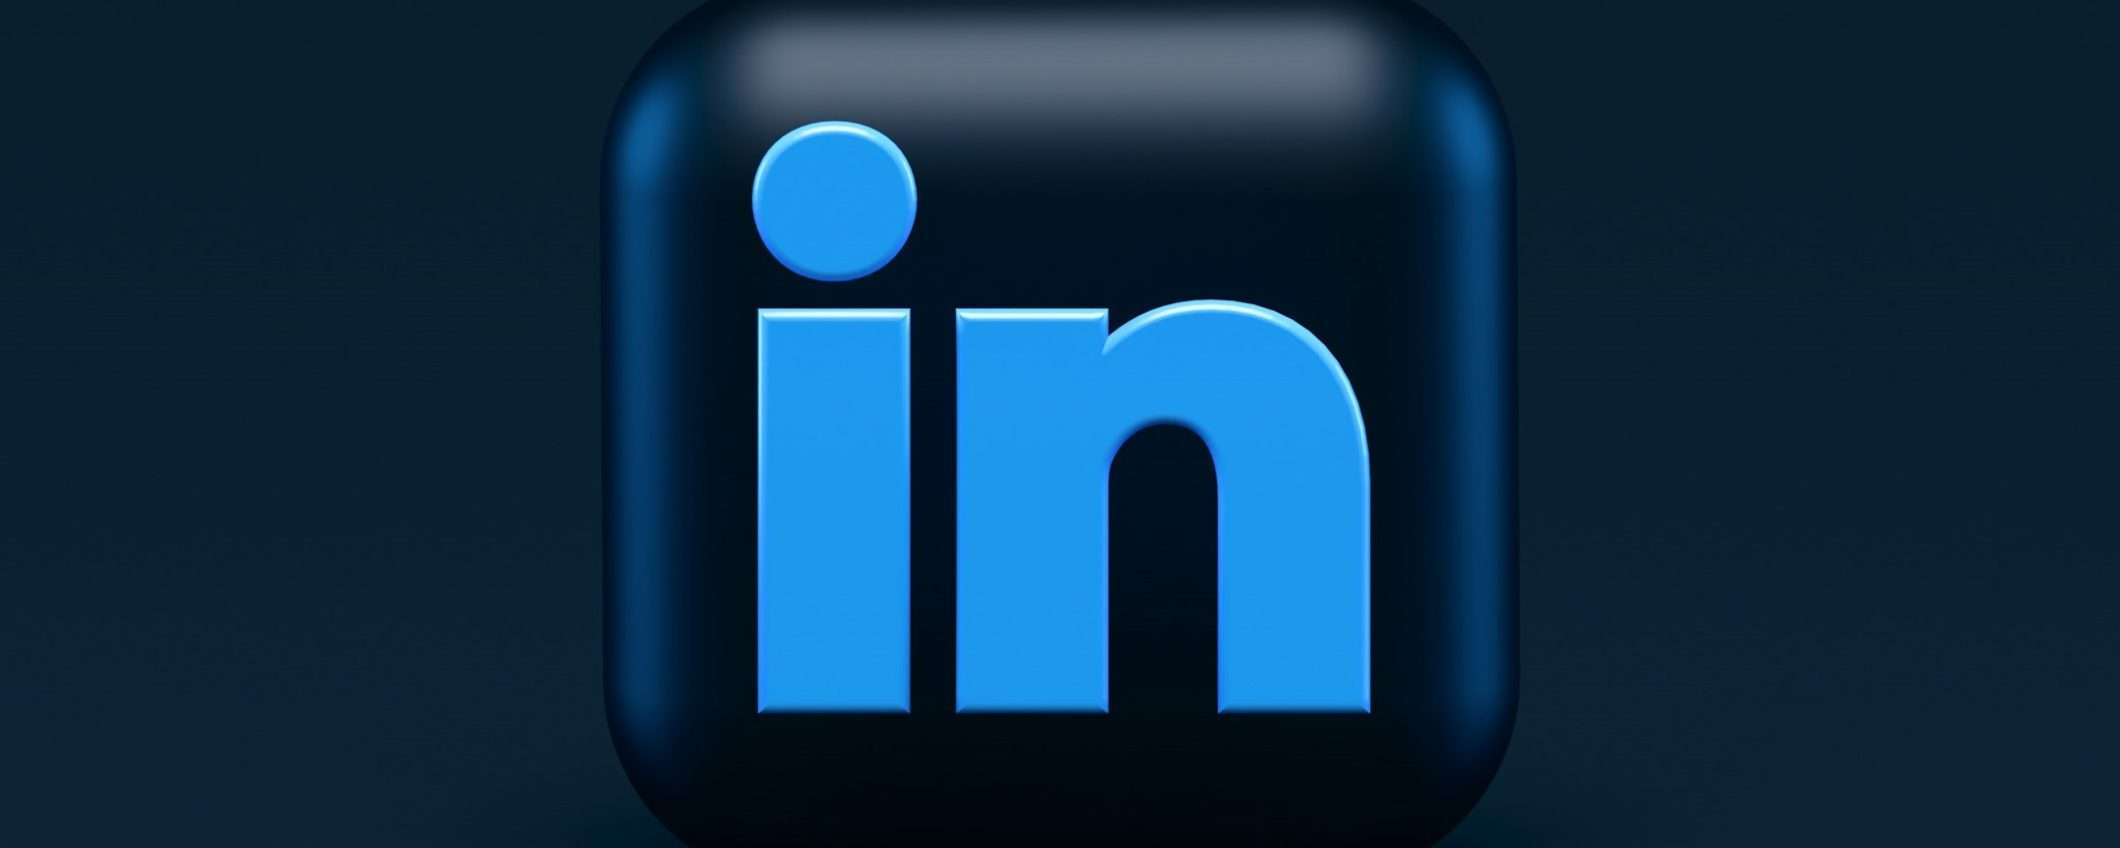 Come usare l'Intelligenza Artificiale per migliorare il profilo LinkedIn